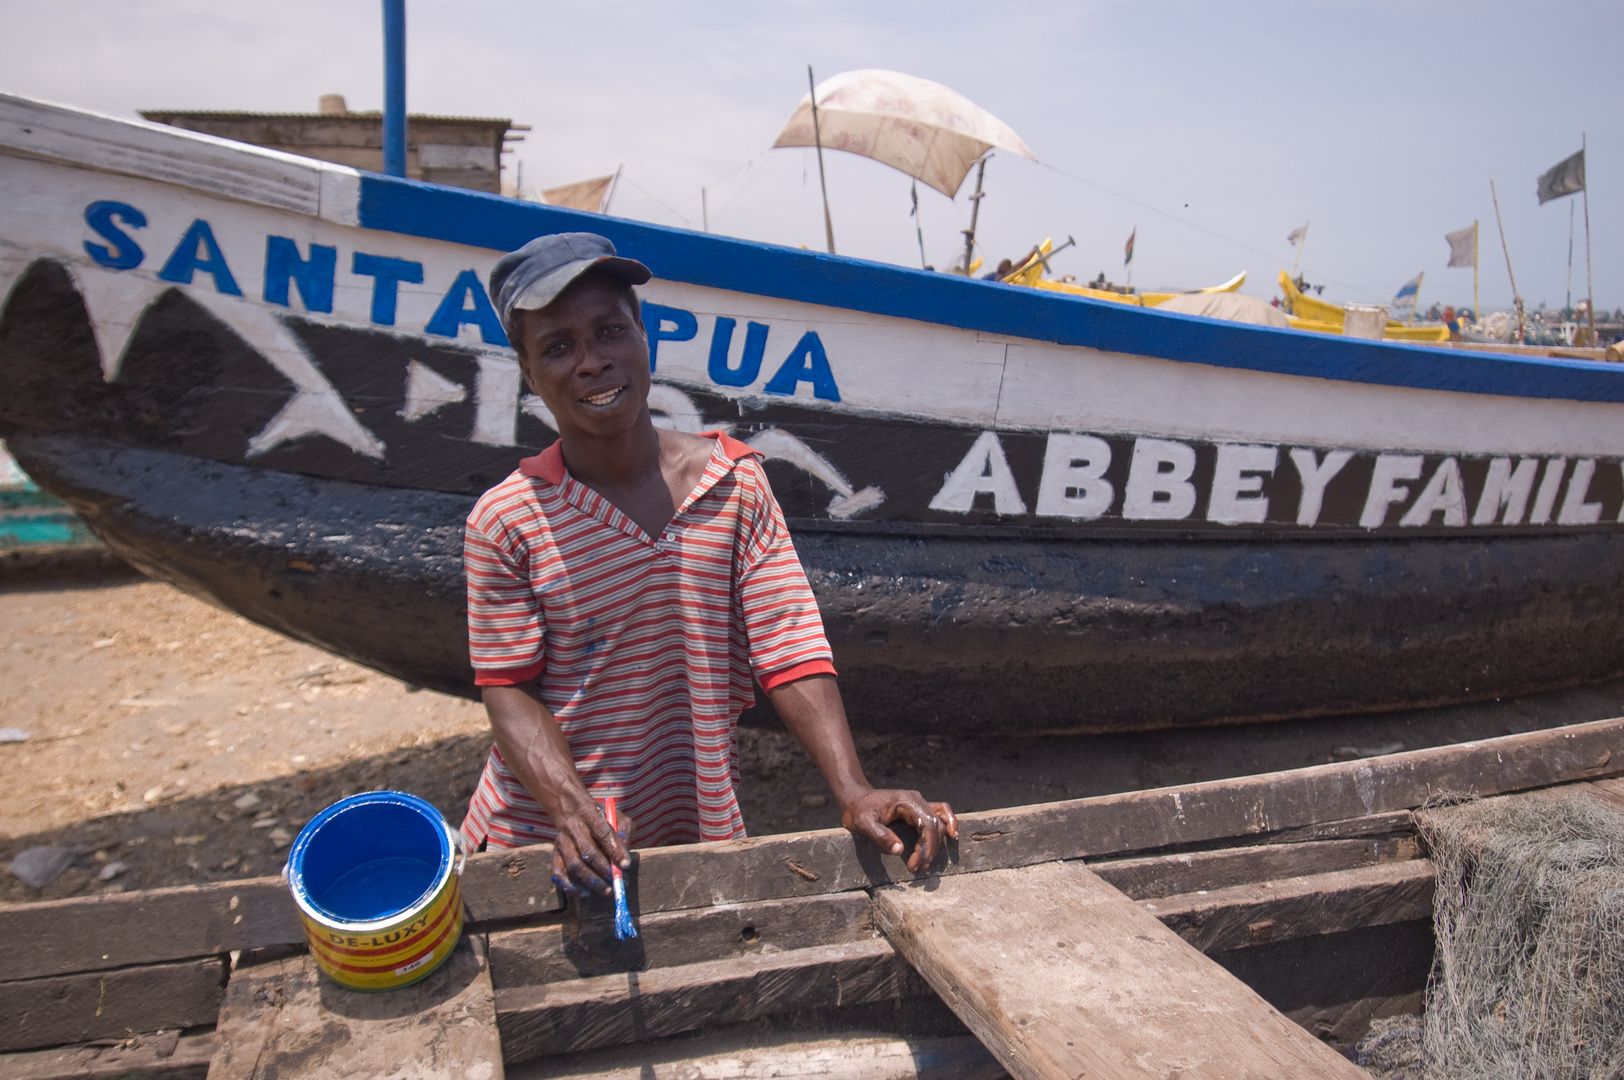 Restauratore barche - Accra